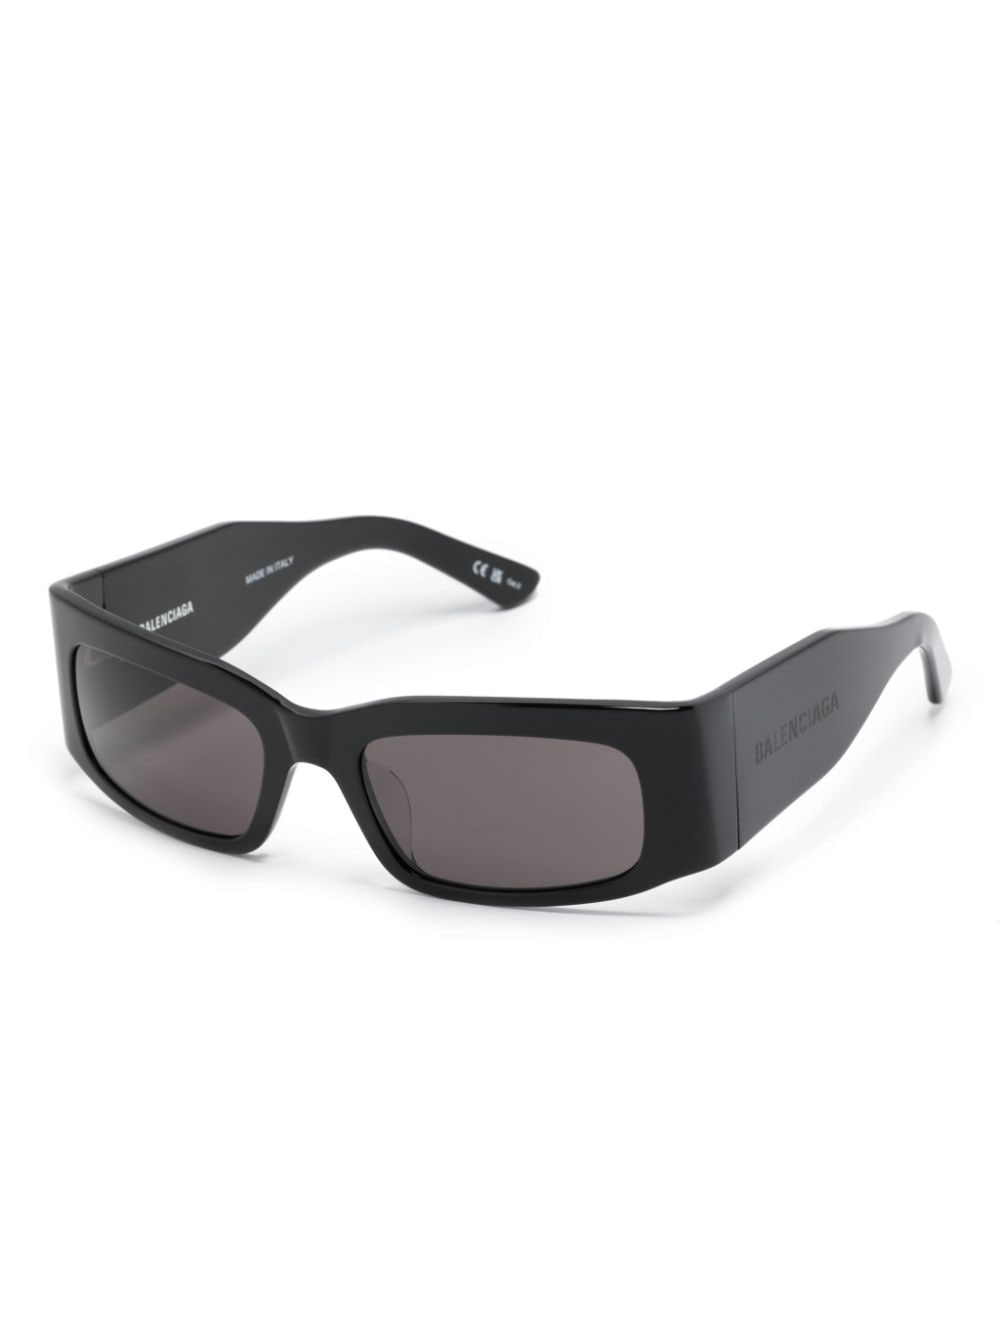 square-frame sunglasses - 2